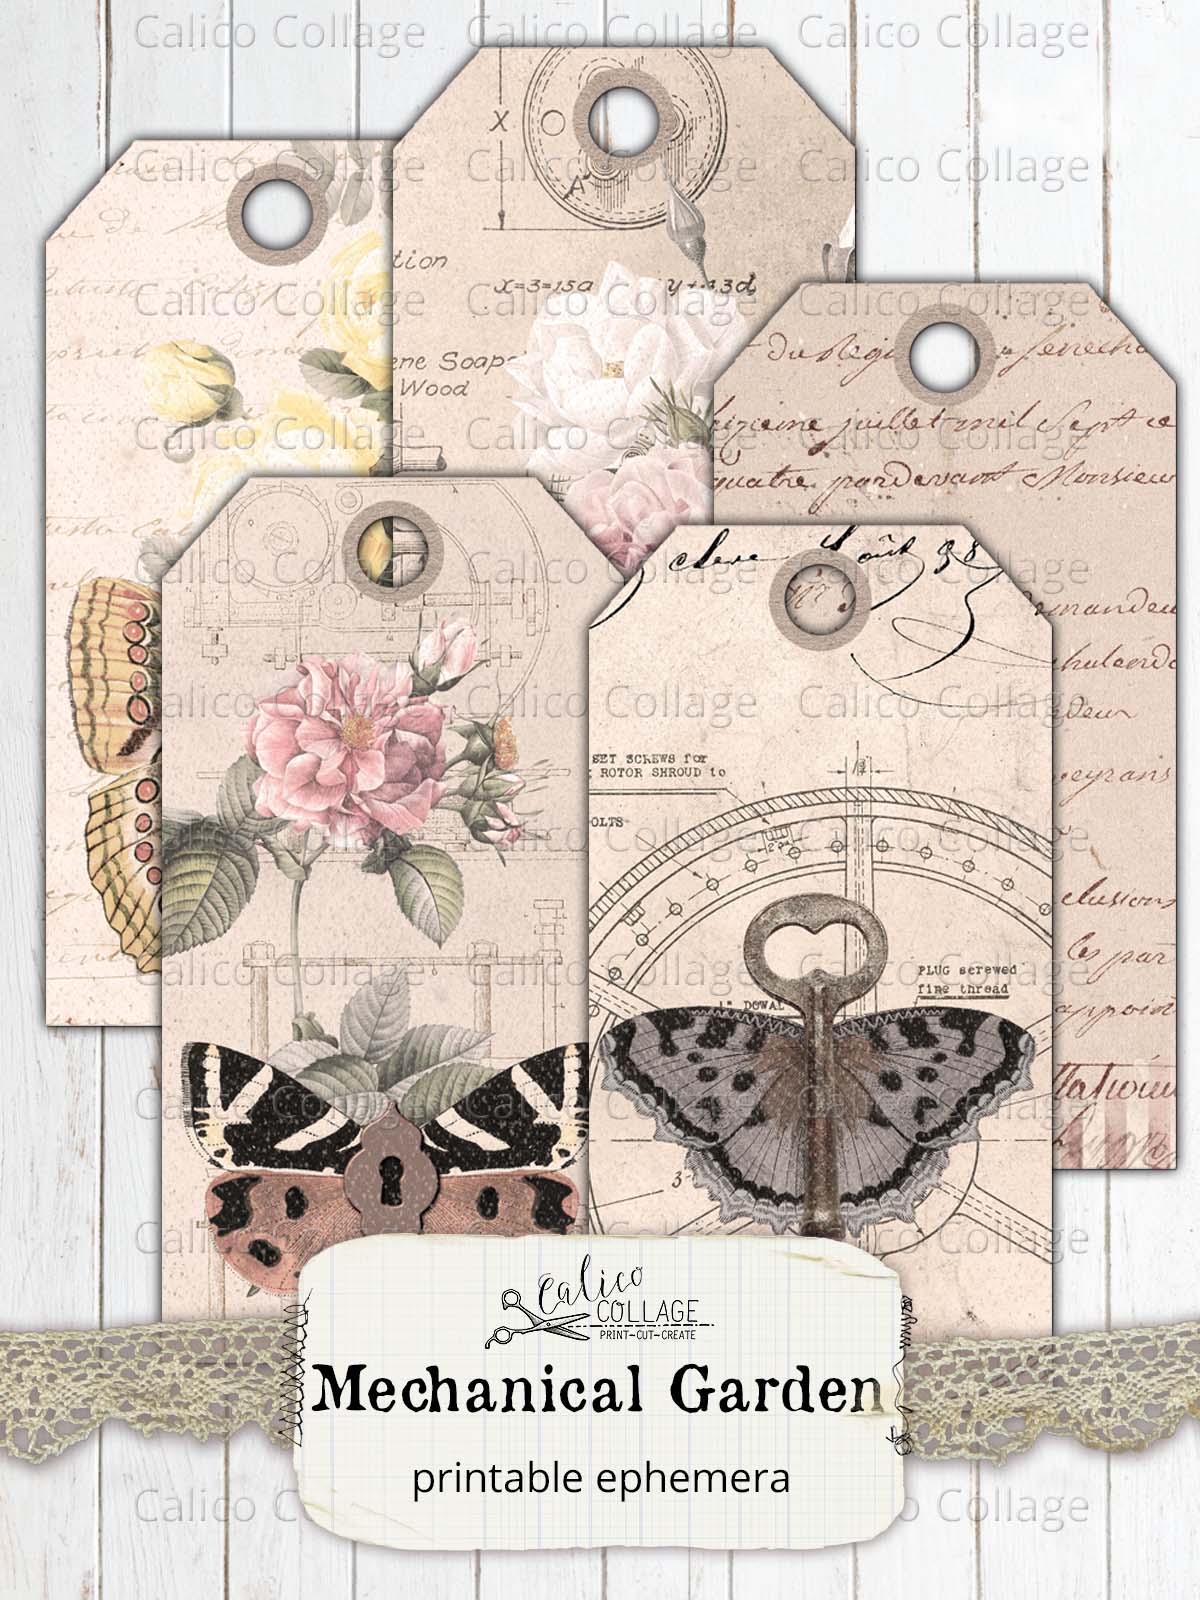 Mechanical Garden Junk Journal Bundle